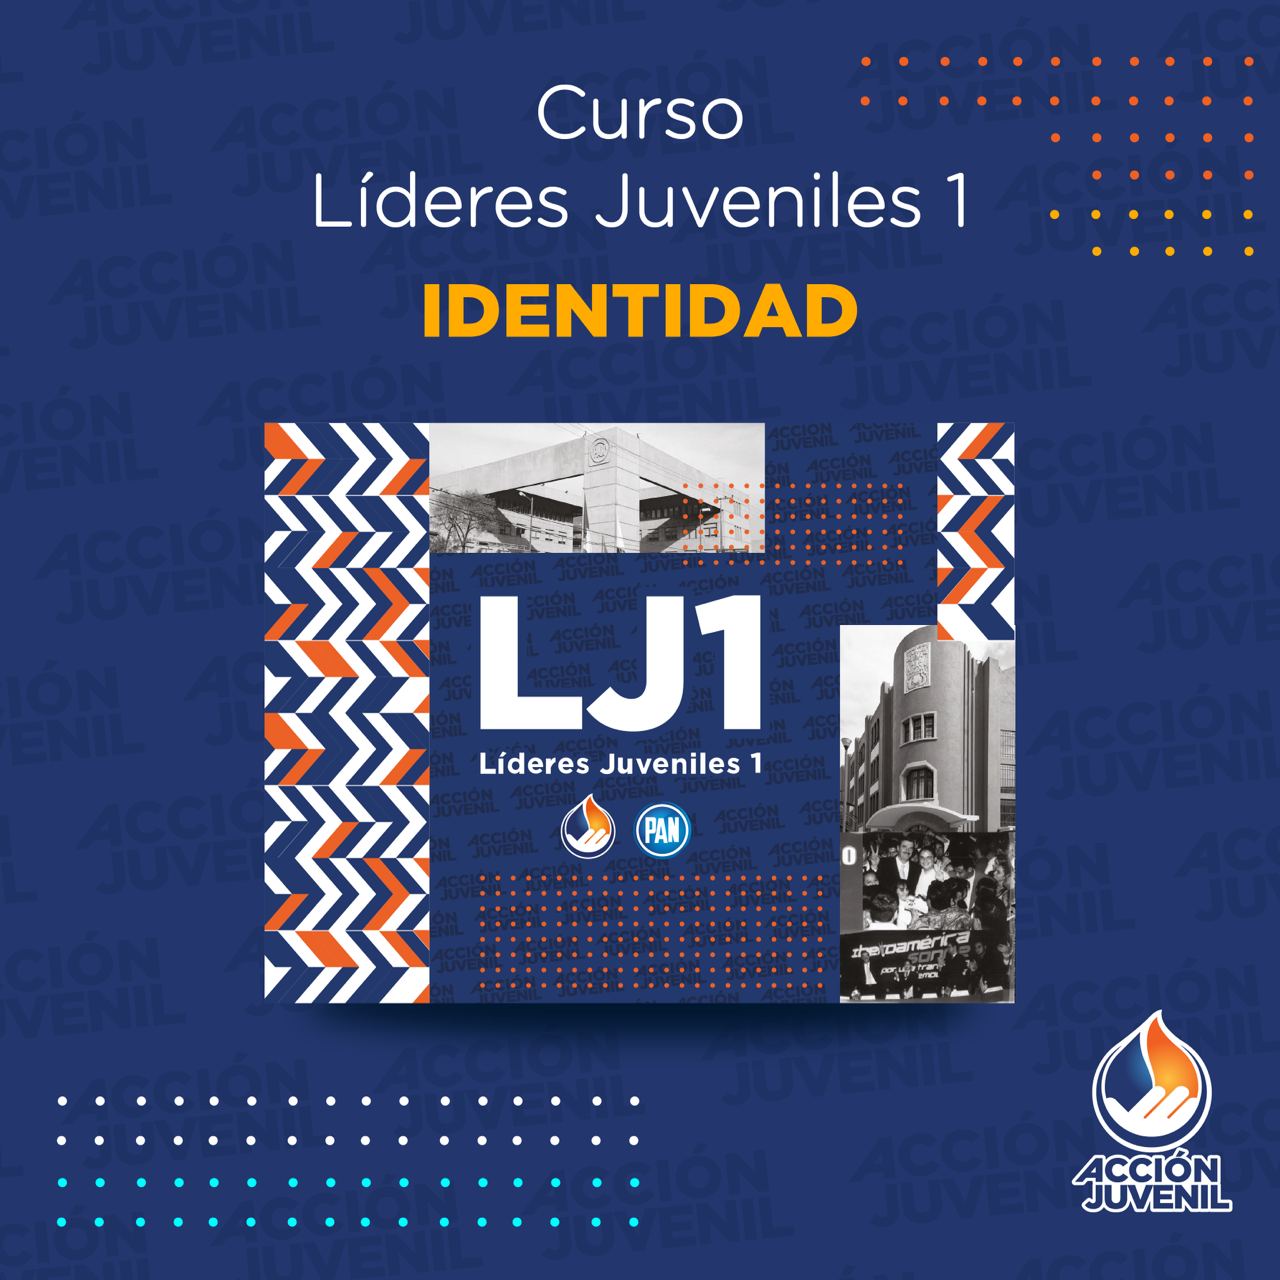 Curso Líderes Juveniles 1 Identidad  Benito Juárez, CDMX 22/01/22 